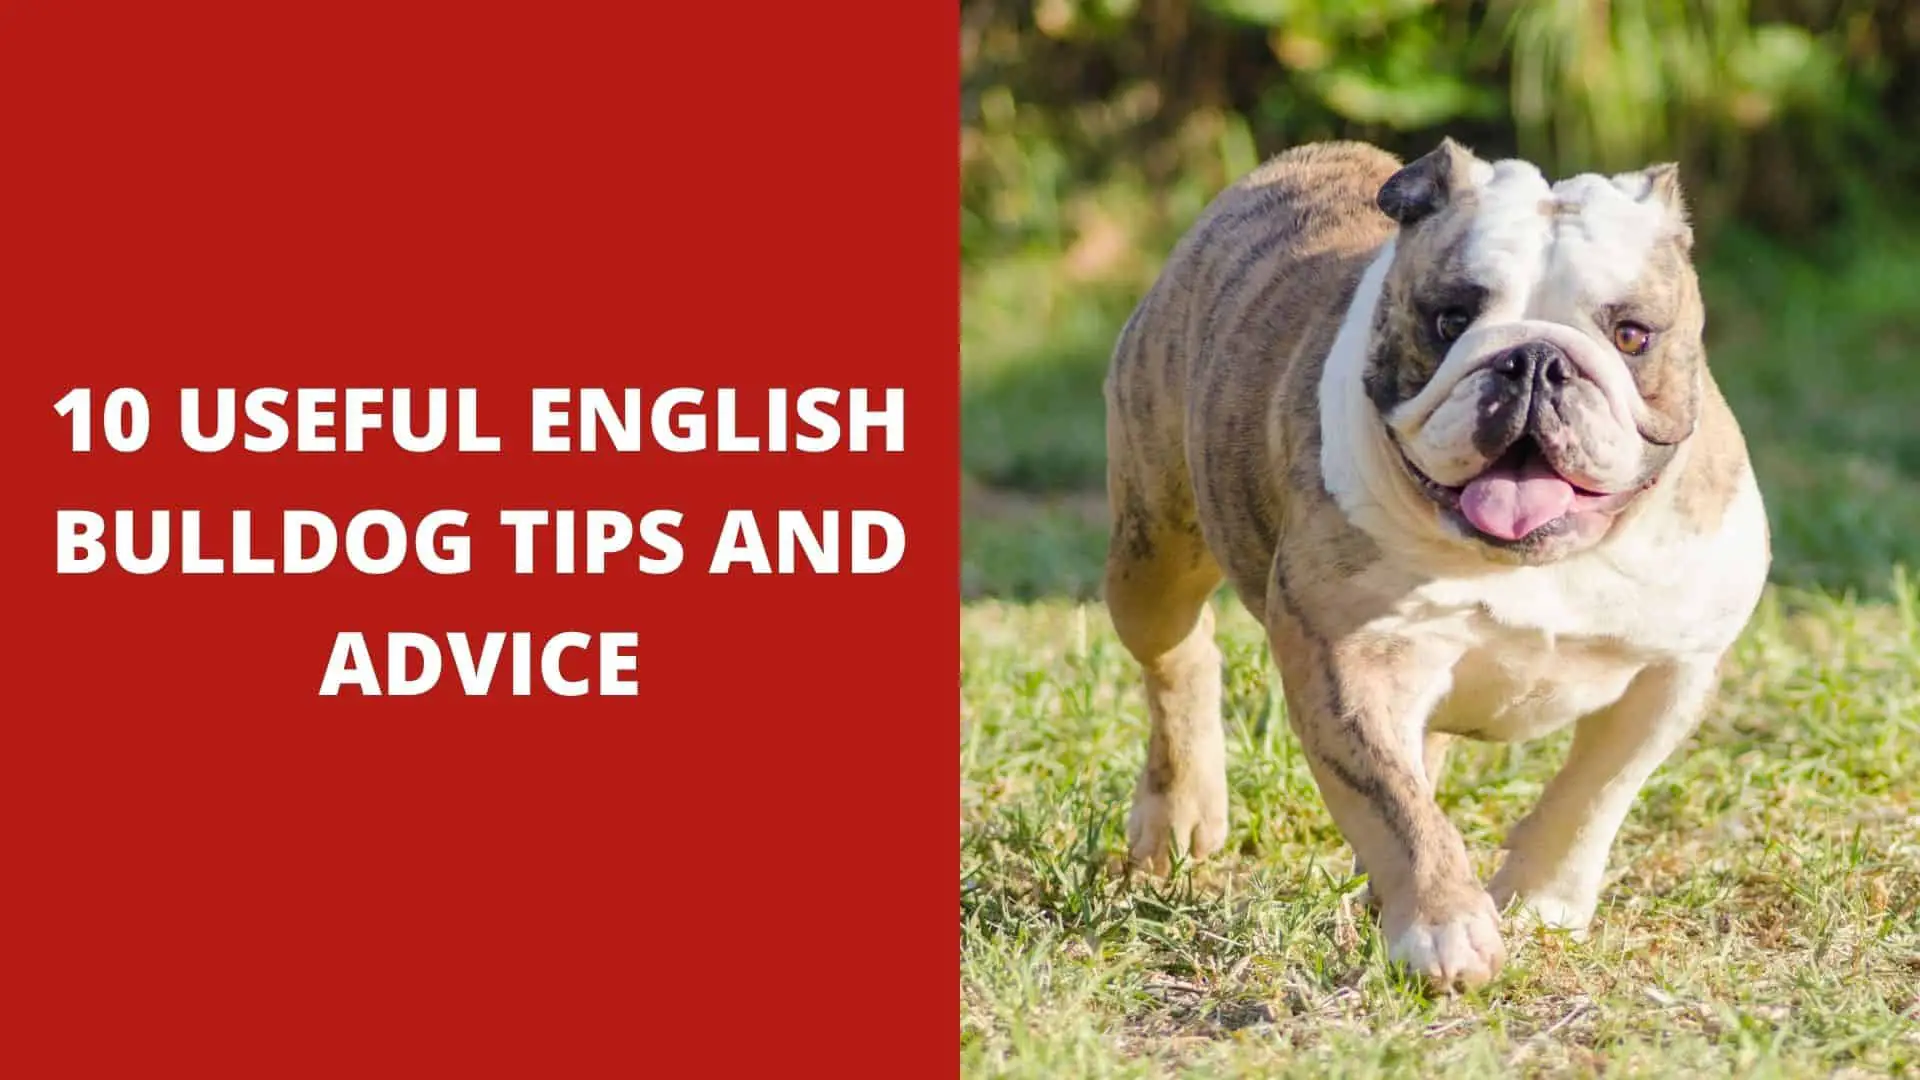 10 Useful English Bulldog Tips and Advice